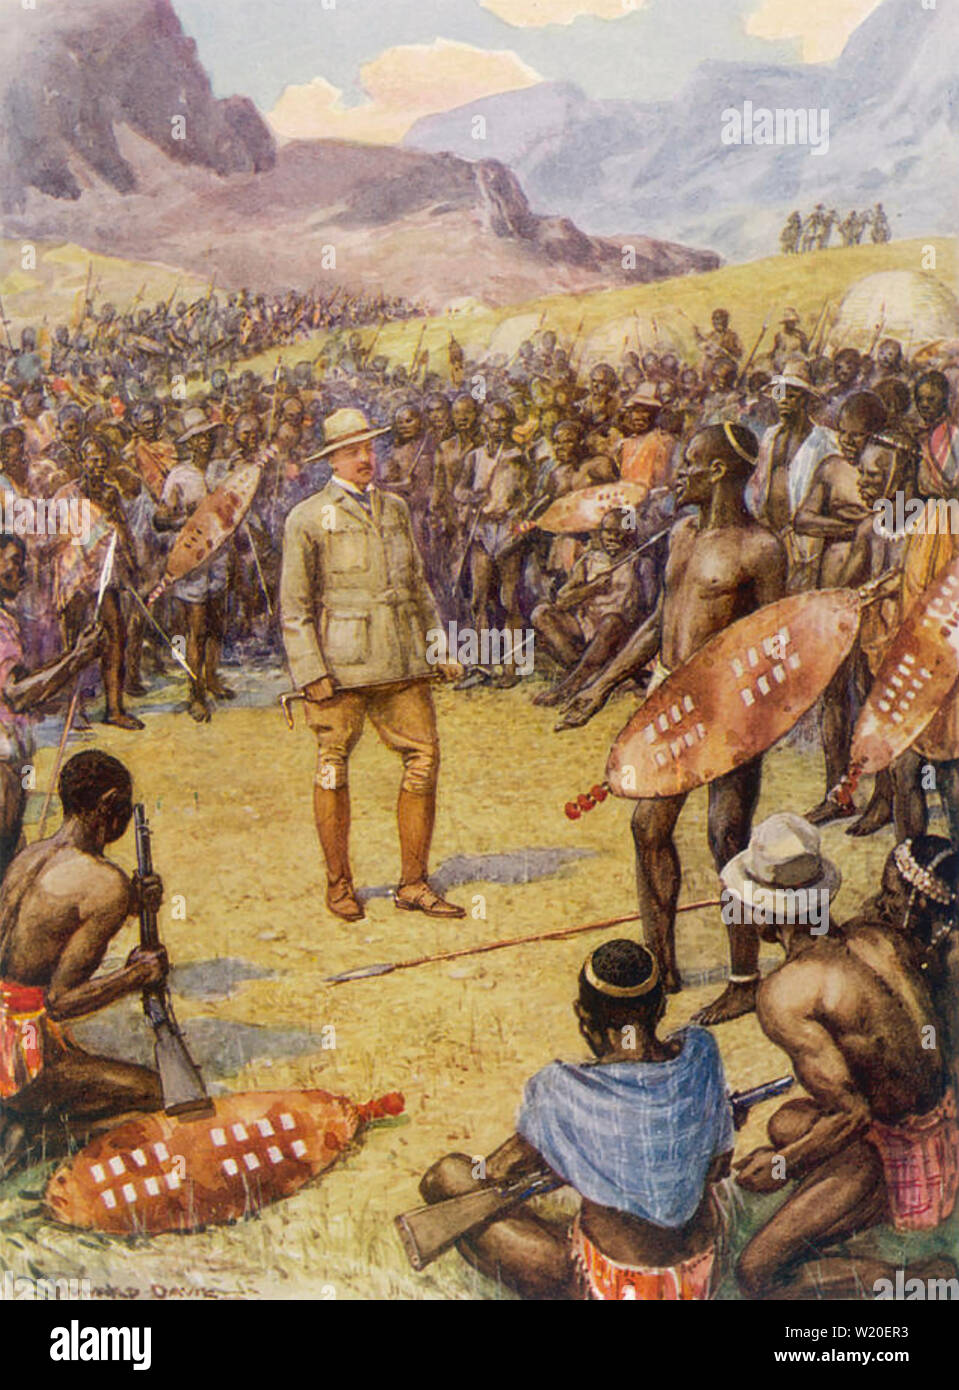 CECIL RHODES (1853-1902) British imprenditore nei colloqui di pace con i membri dei Ndebele in colline di Matobo termina la seconda guerra Matabele Foto Stock